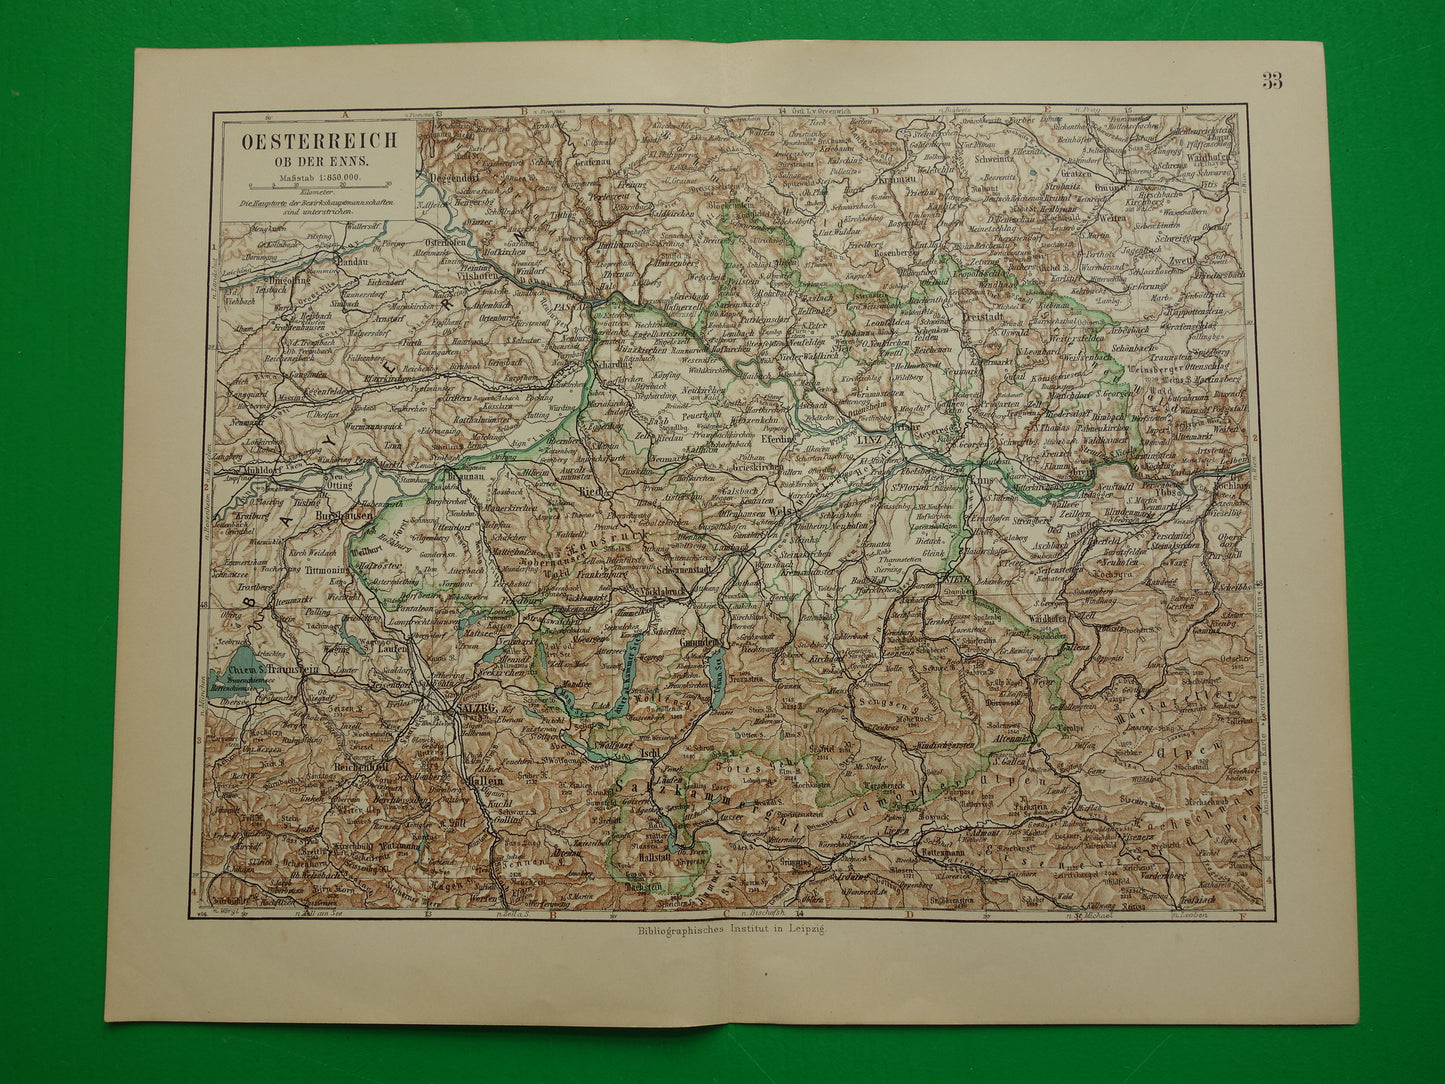 Oostenrijk oude landkaart originele antieke kaart uit 1906 Linz Salzburg Ried vintage kaarten